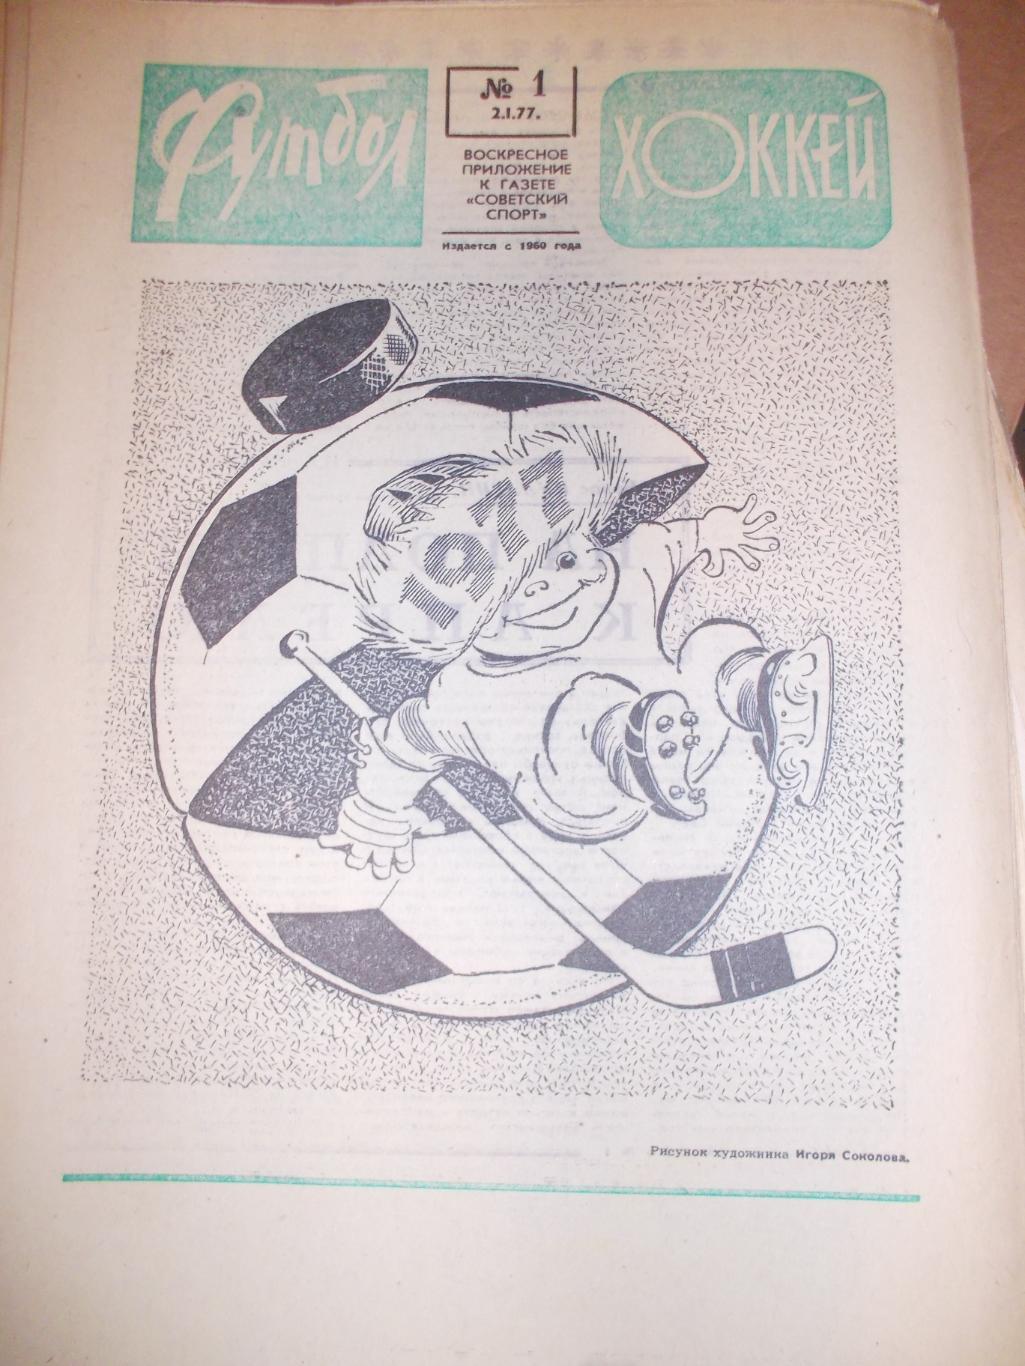 Еженедельник Футбол-Хоккей,1977 полный комплект.